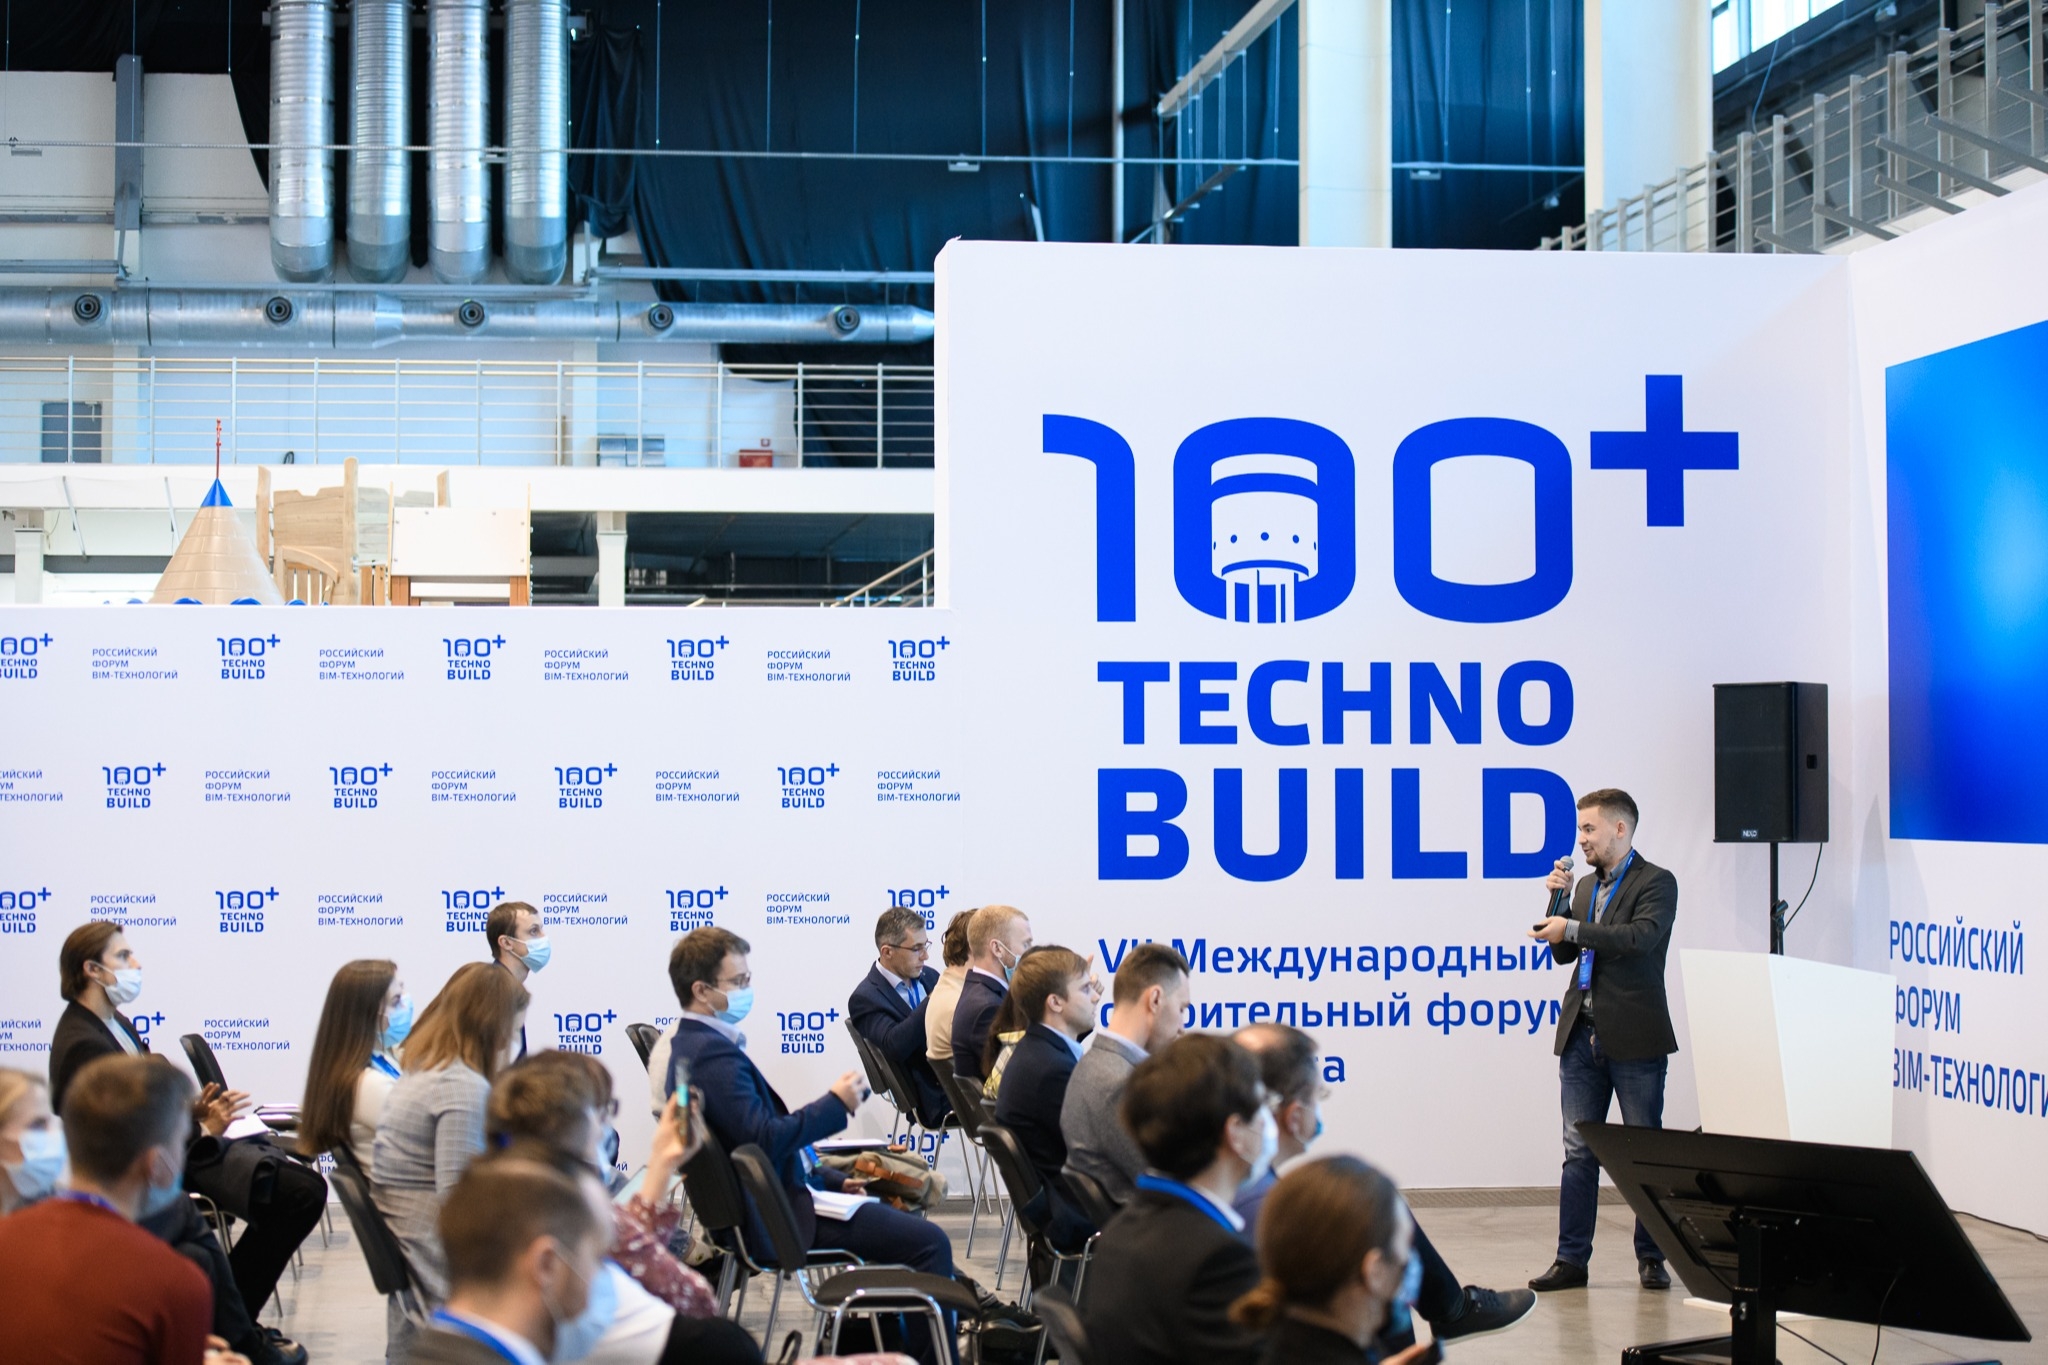 Более 40 соглашений планируется заключить в рамках форума 100+ TechnoBuild в Екатеринбурге